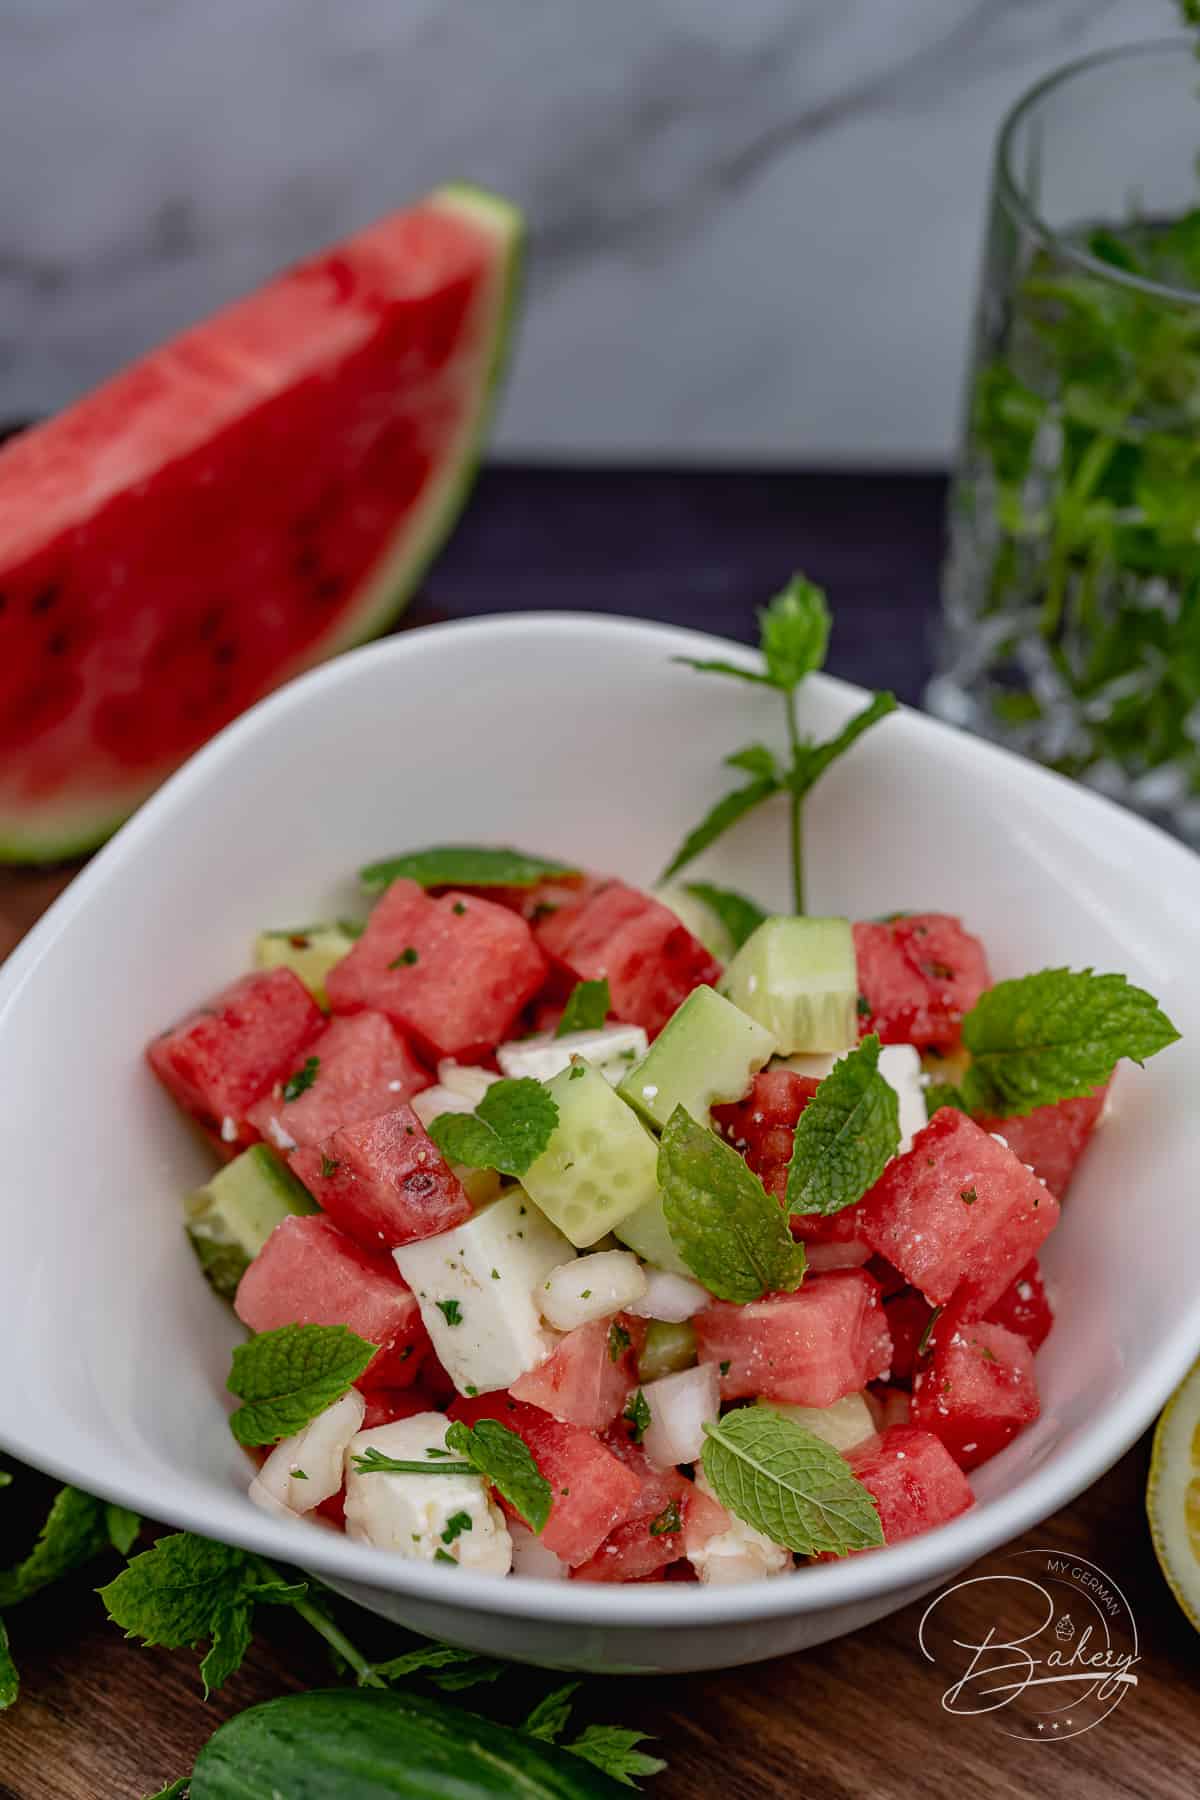 Fitness-Salat - Gesunder Salat mit Wassermelone, Gurke, Feta und frischer Minze - erfrischend und einfach